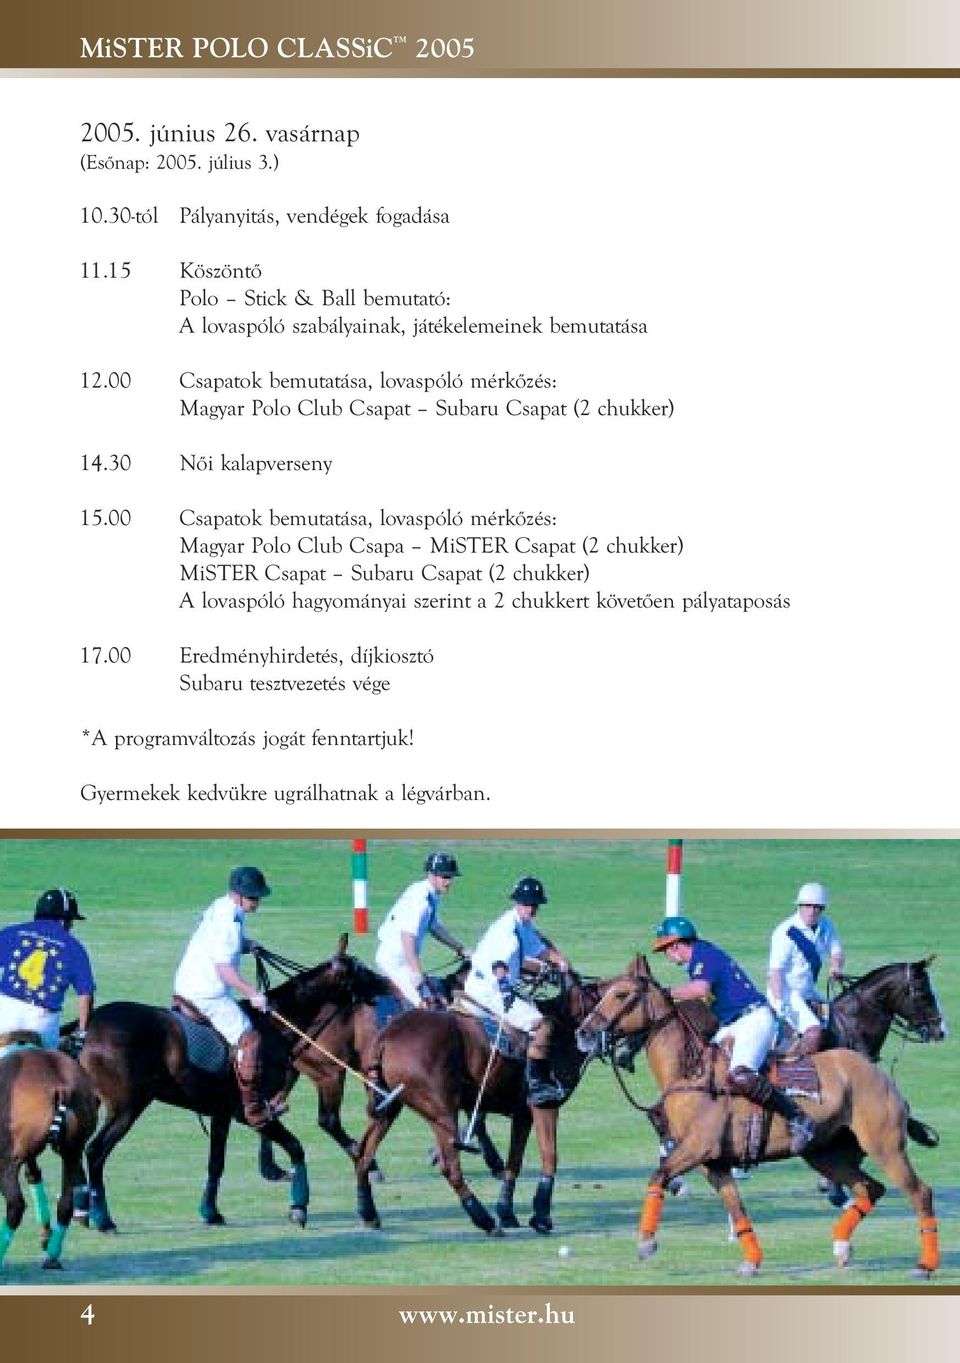 00 Csapatok bemutatása, lovaspóló mérkôzés: Magyar Polo Club Csapat Subaru Csapat (2 chukker) 14.30 Nôi kalapverseny 15.